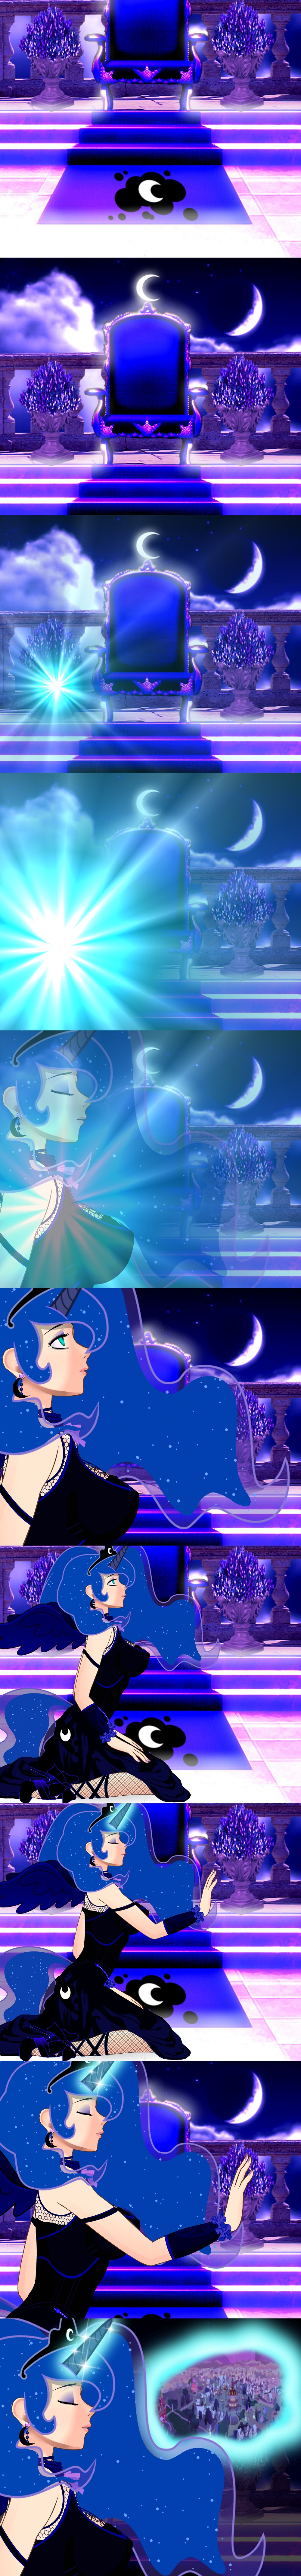 Princess Luna Preview.jpg